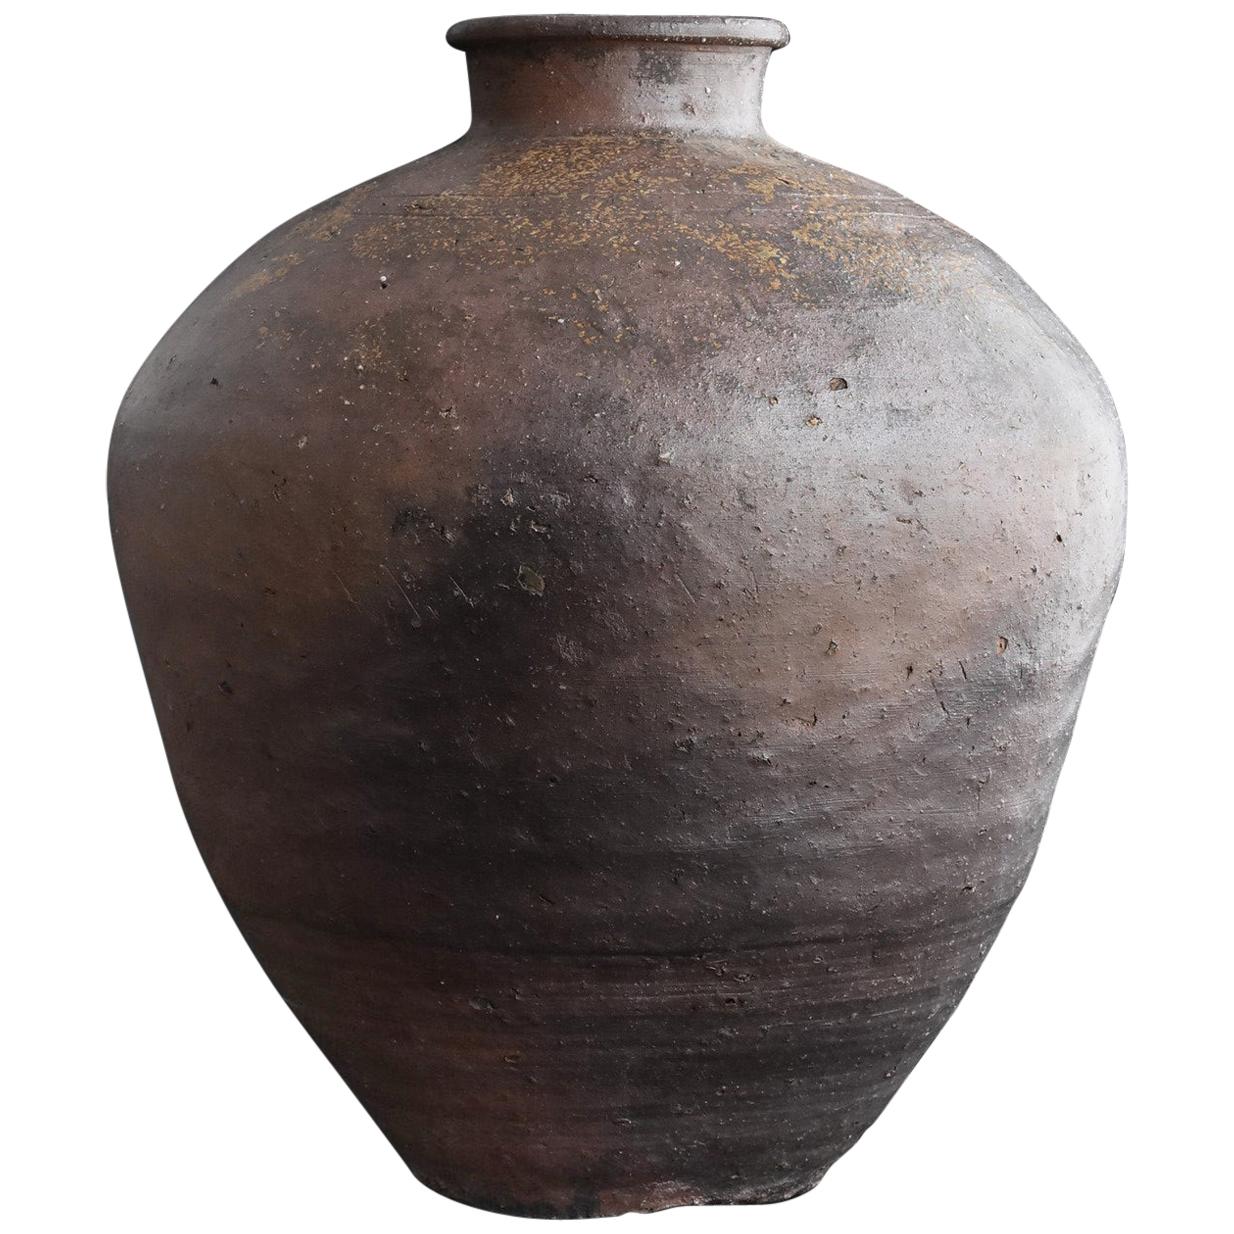 Japanese Antique Pottery "Shigaraki" Large Jar 16th Century / Old Wabi-Sabi Vase